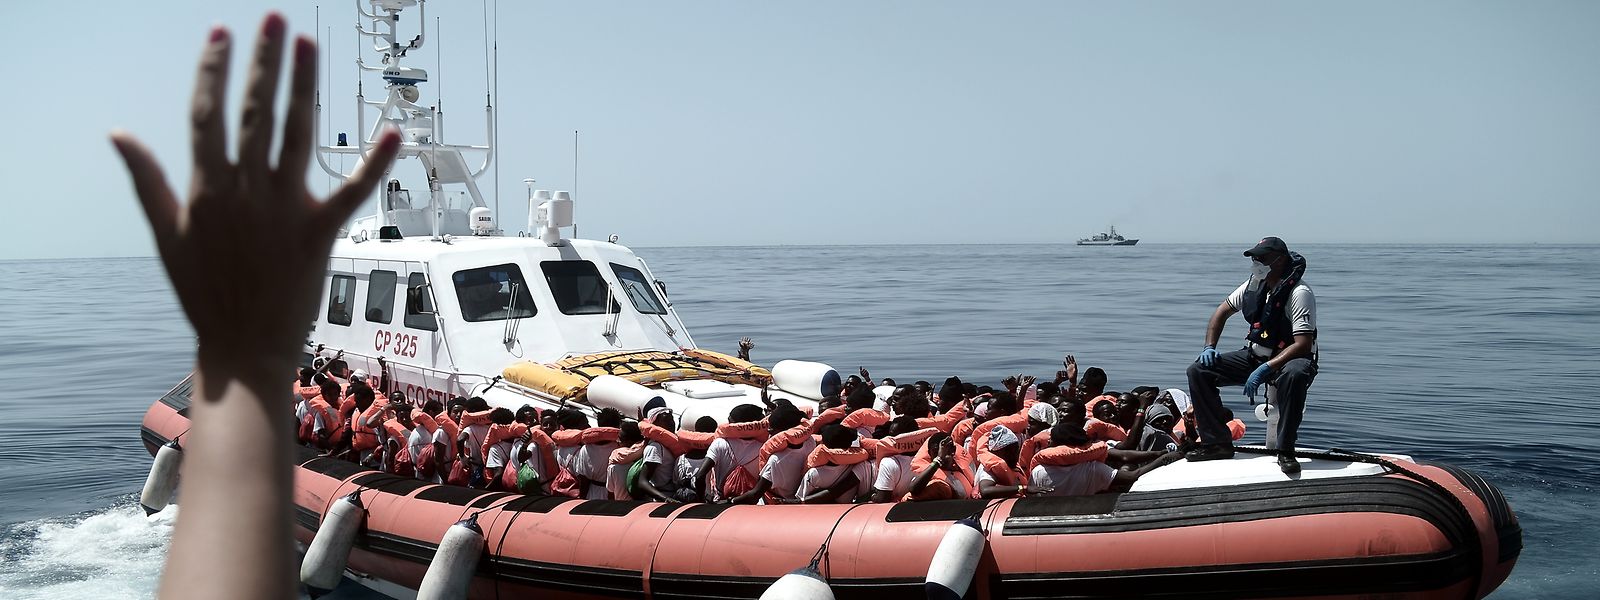 Flüchtlinge an Bord eines Schiffs der italienischen Küstenwache, nachdem sie das Rettungsschiff Aquarius verlassen haben. 